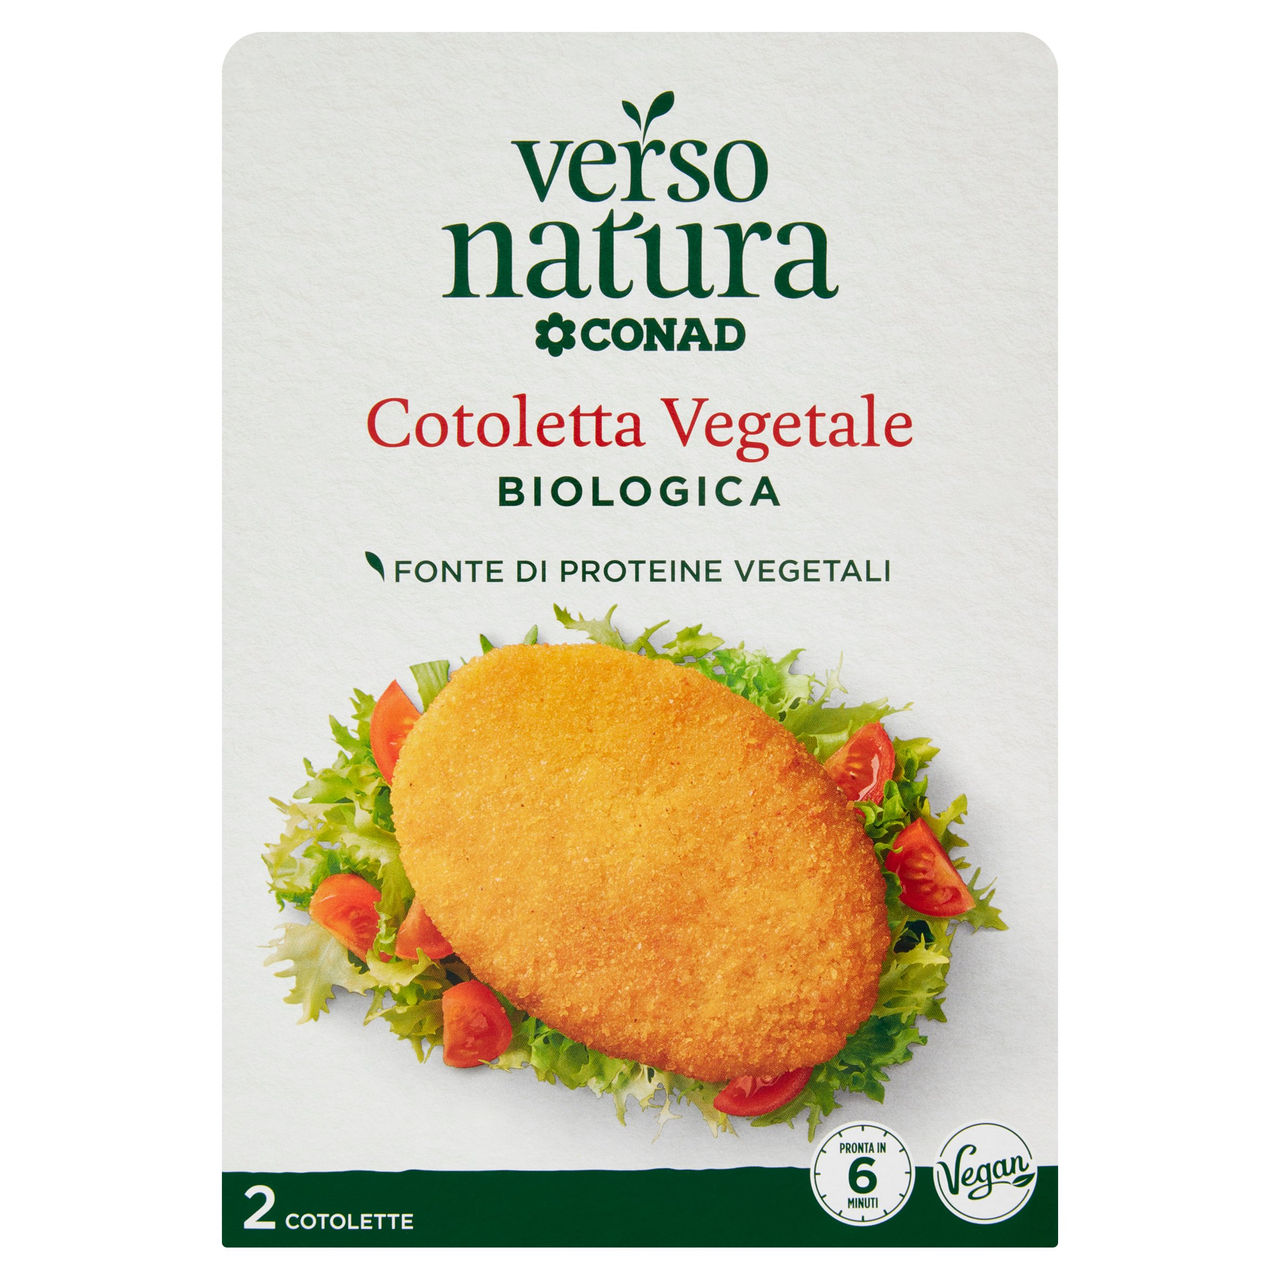 CONAD VERSO NATURA Cotoletta Vegetale Biologica 2 Cotolette 160 g